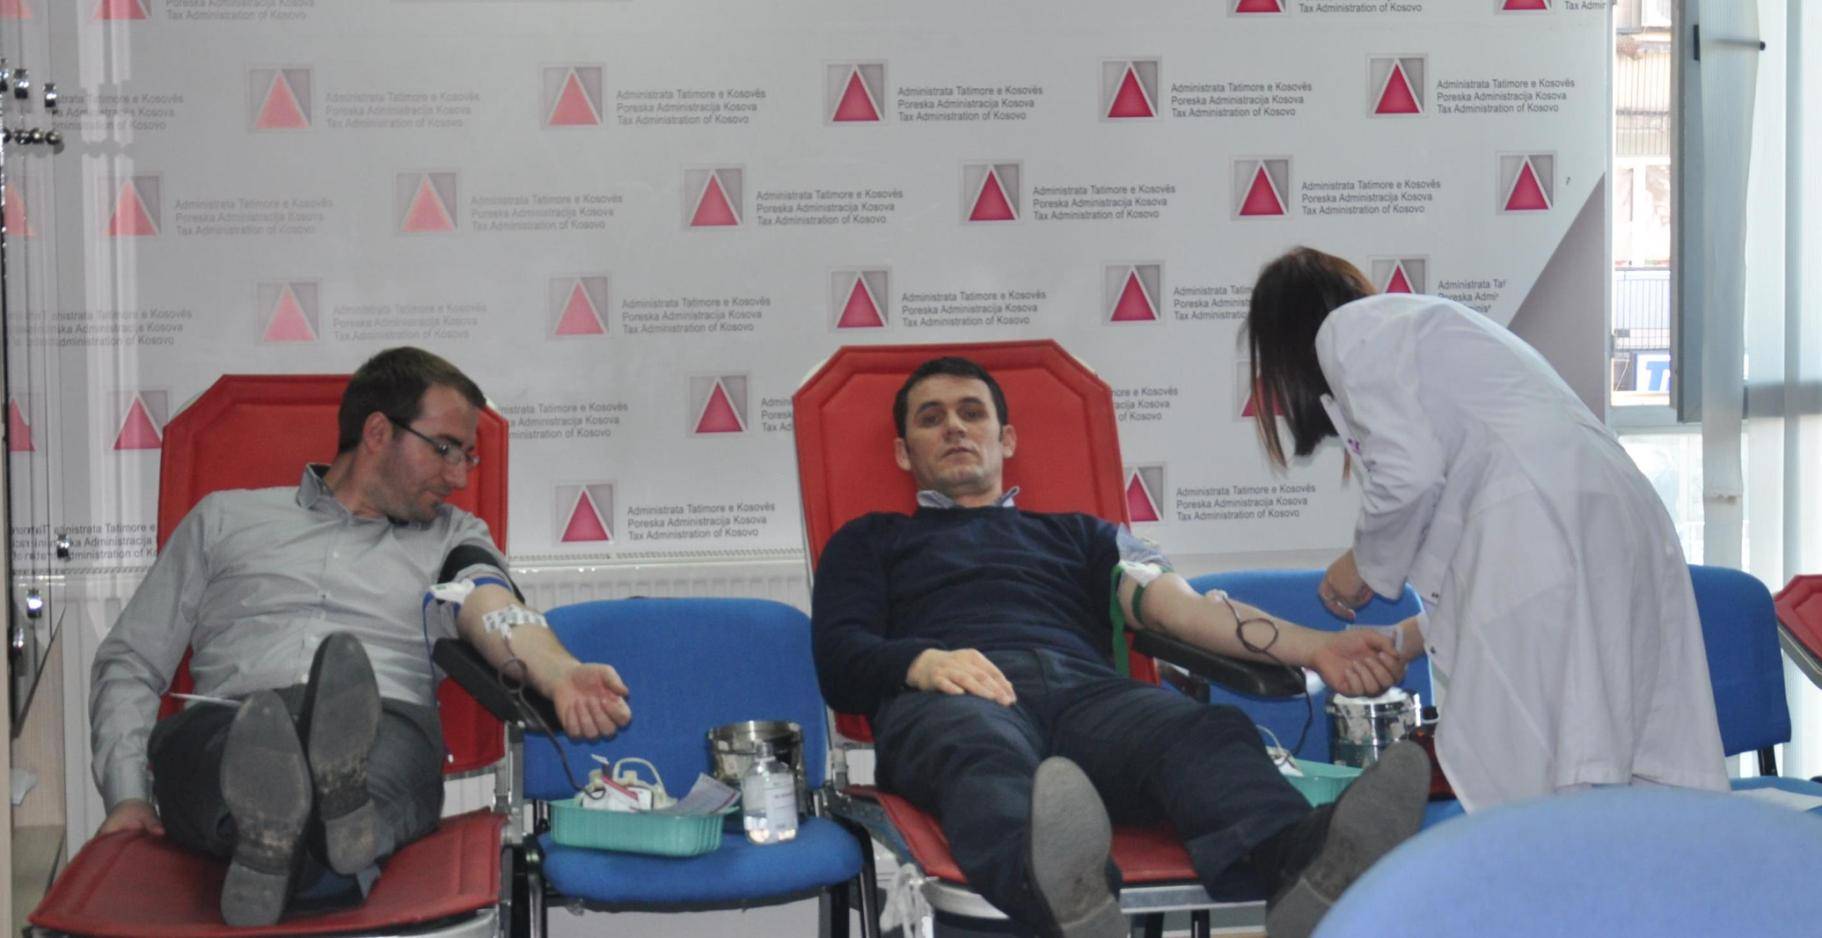 Zyrtarë të ATK-së dhuruan gjak vullnetarisht